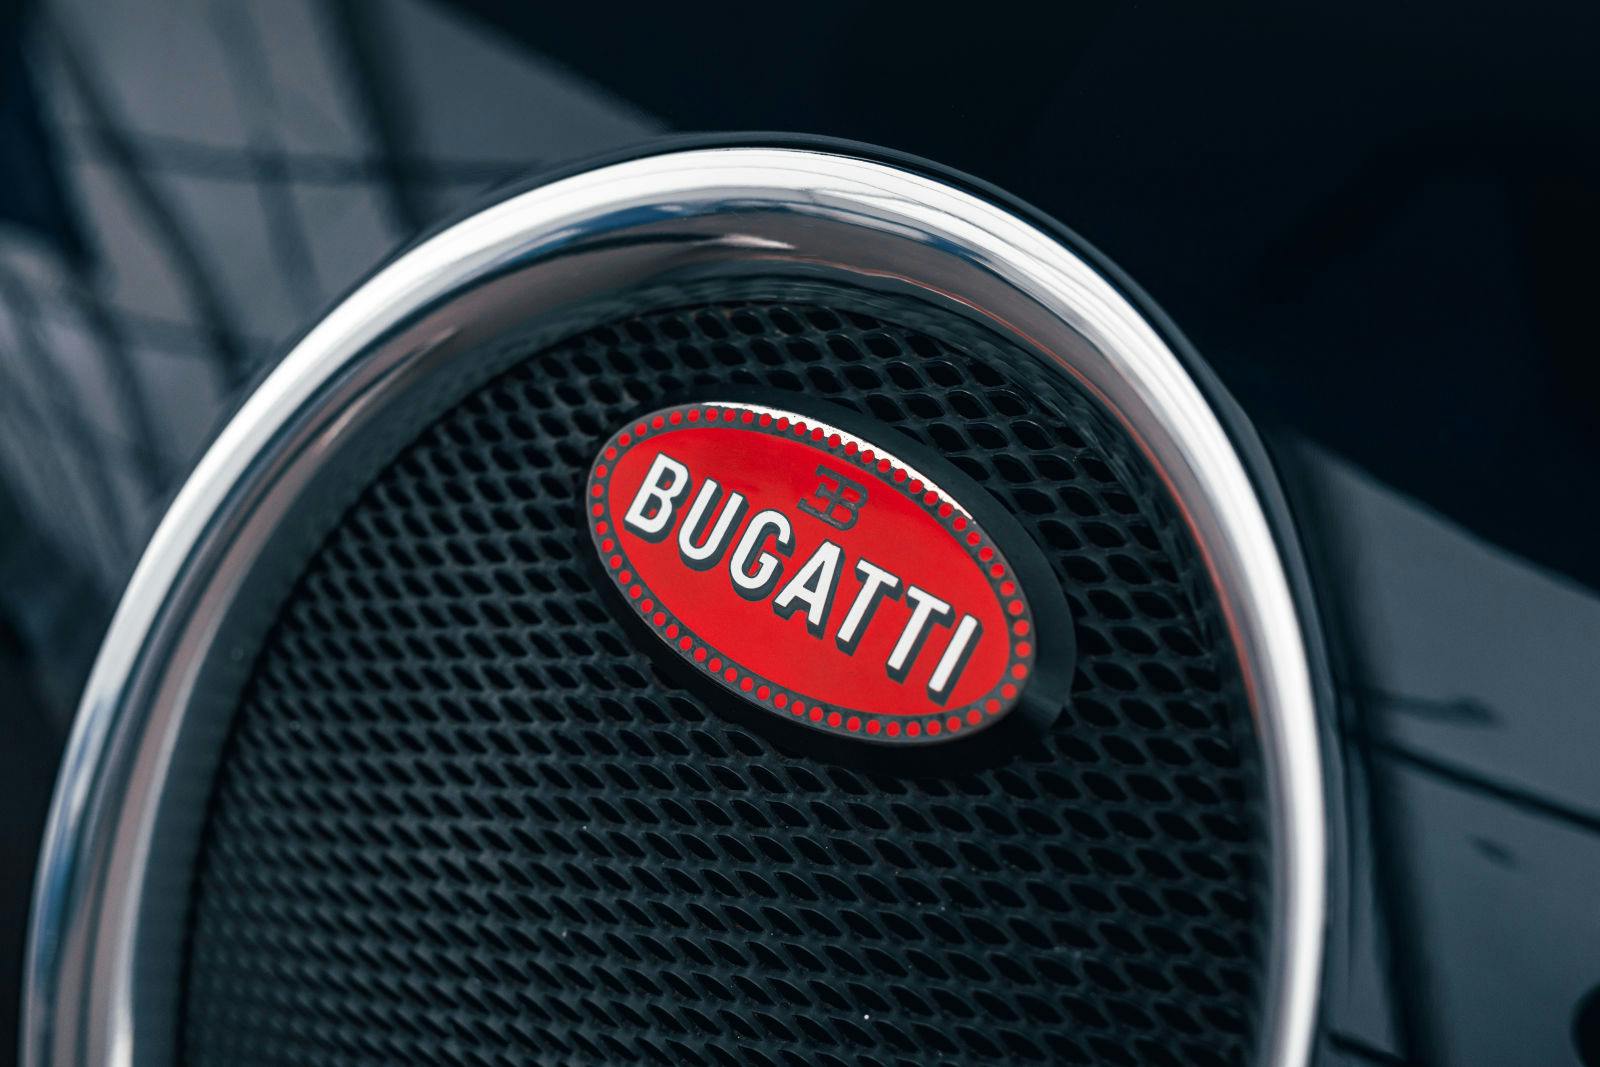 L'ovale rouge de la marque est également utilisé à l'époque moderne de Bugatti : ici sur la Bugatti Veyron 16.4.